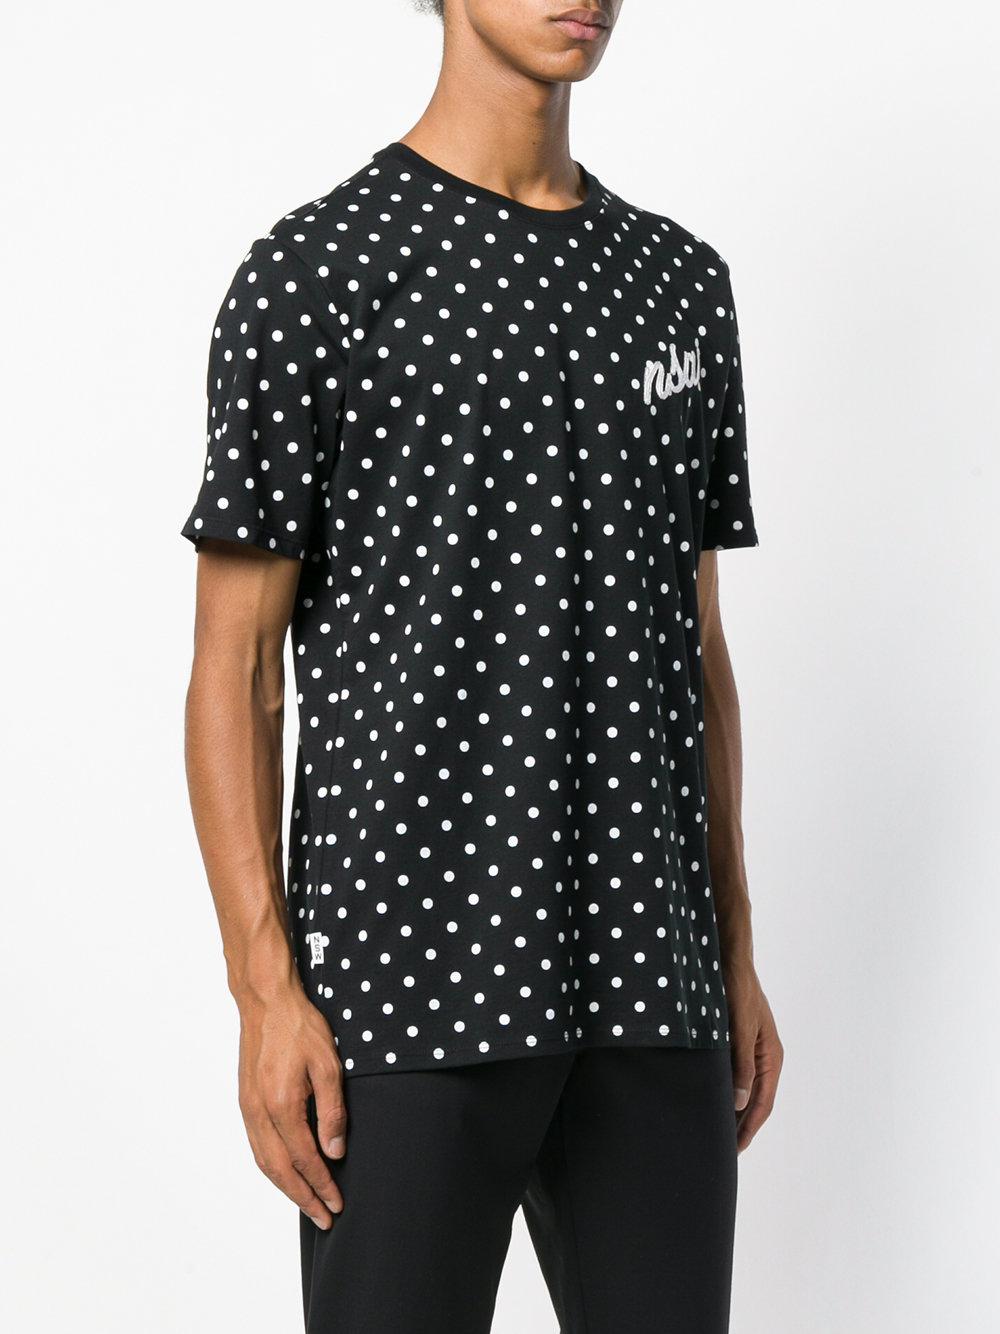 Nike Sportswear Nsw Polka Dot T-shirt 